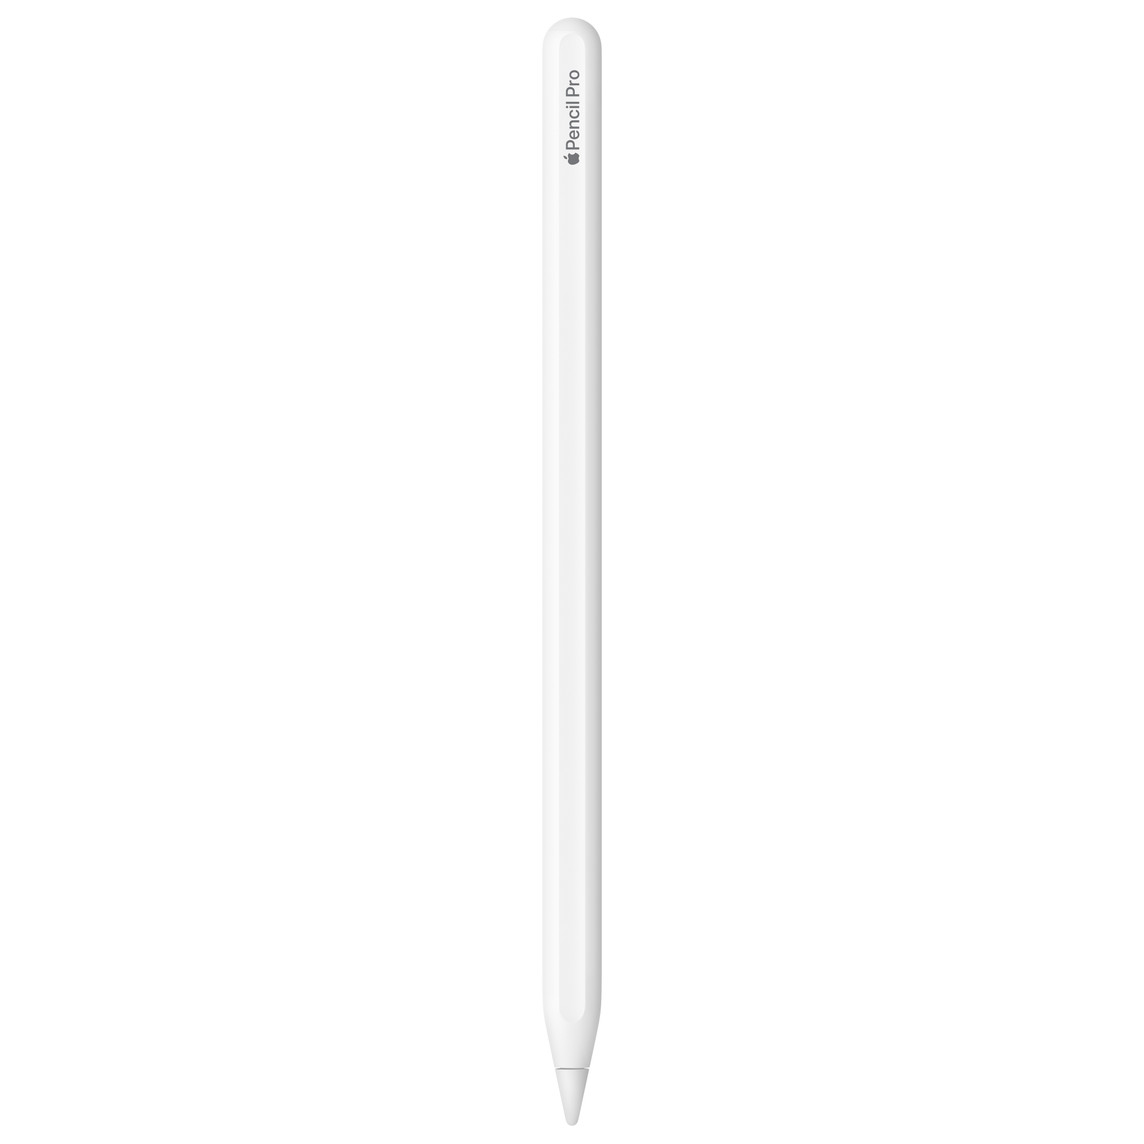 ホワイトのApple Pencil Pro。Apple Pencil Proと刻印が入っていて、Appleの部分はAppleのロゴで表現されている